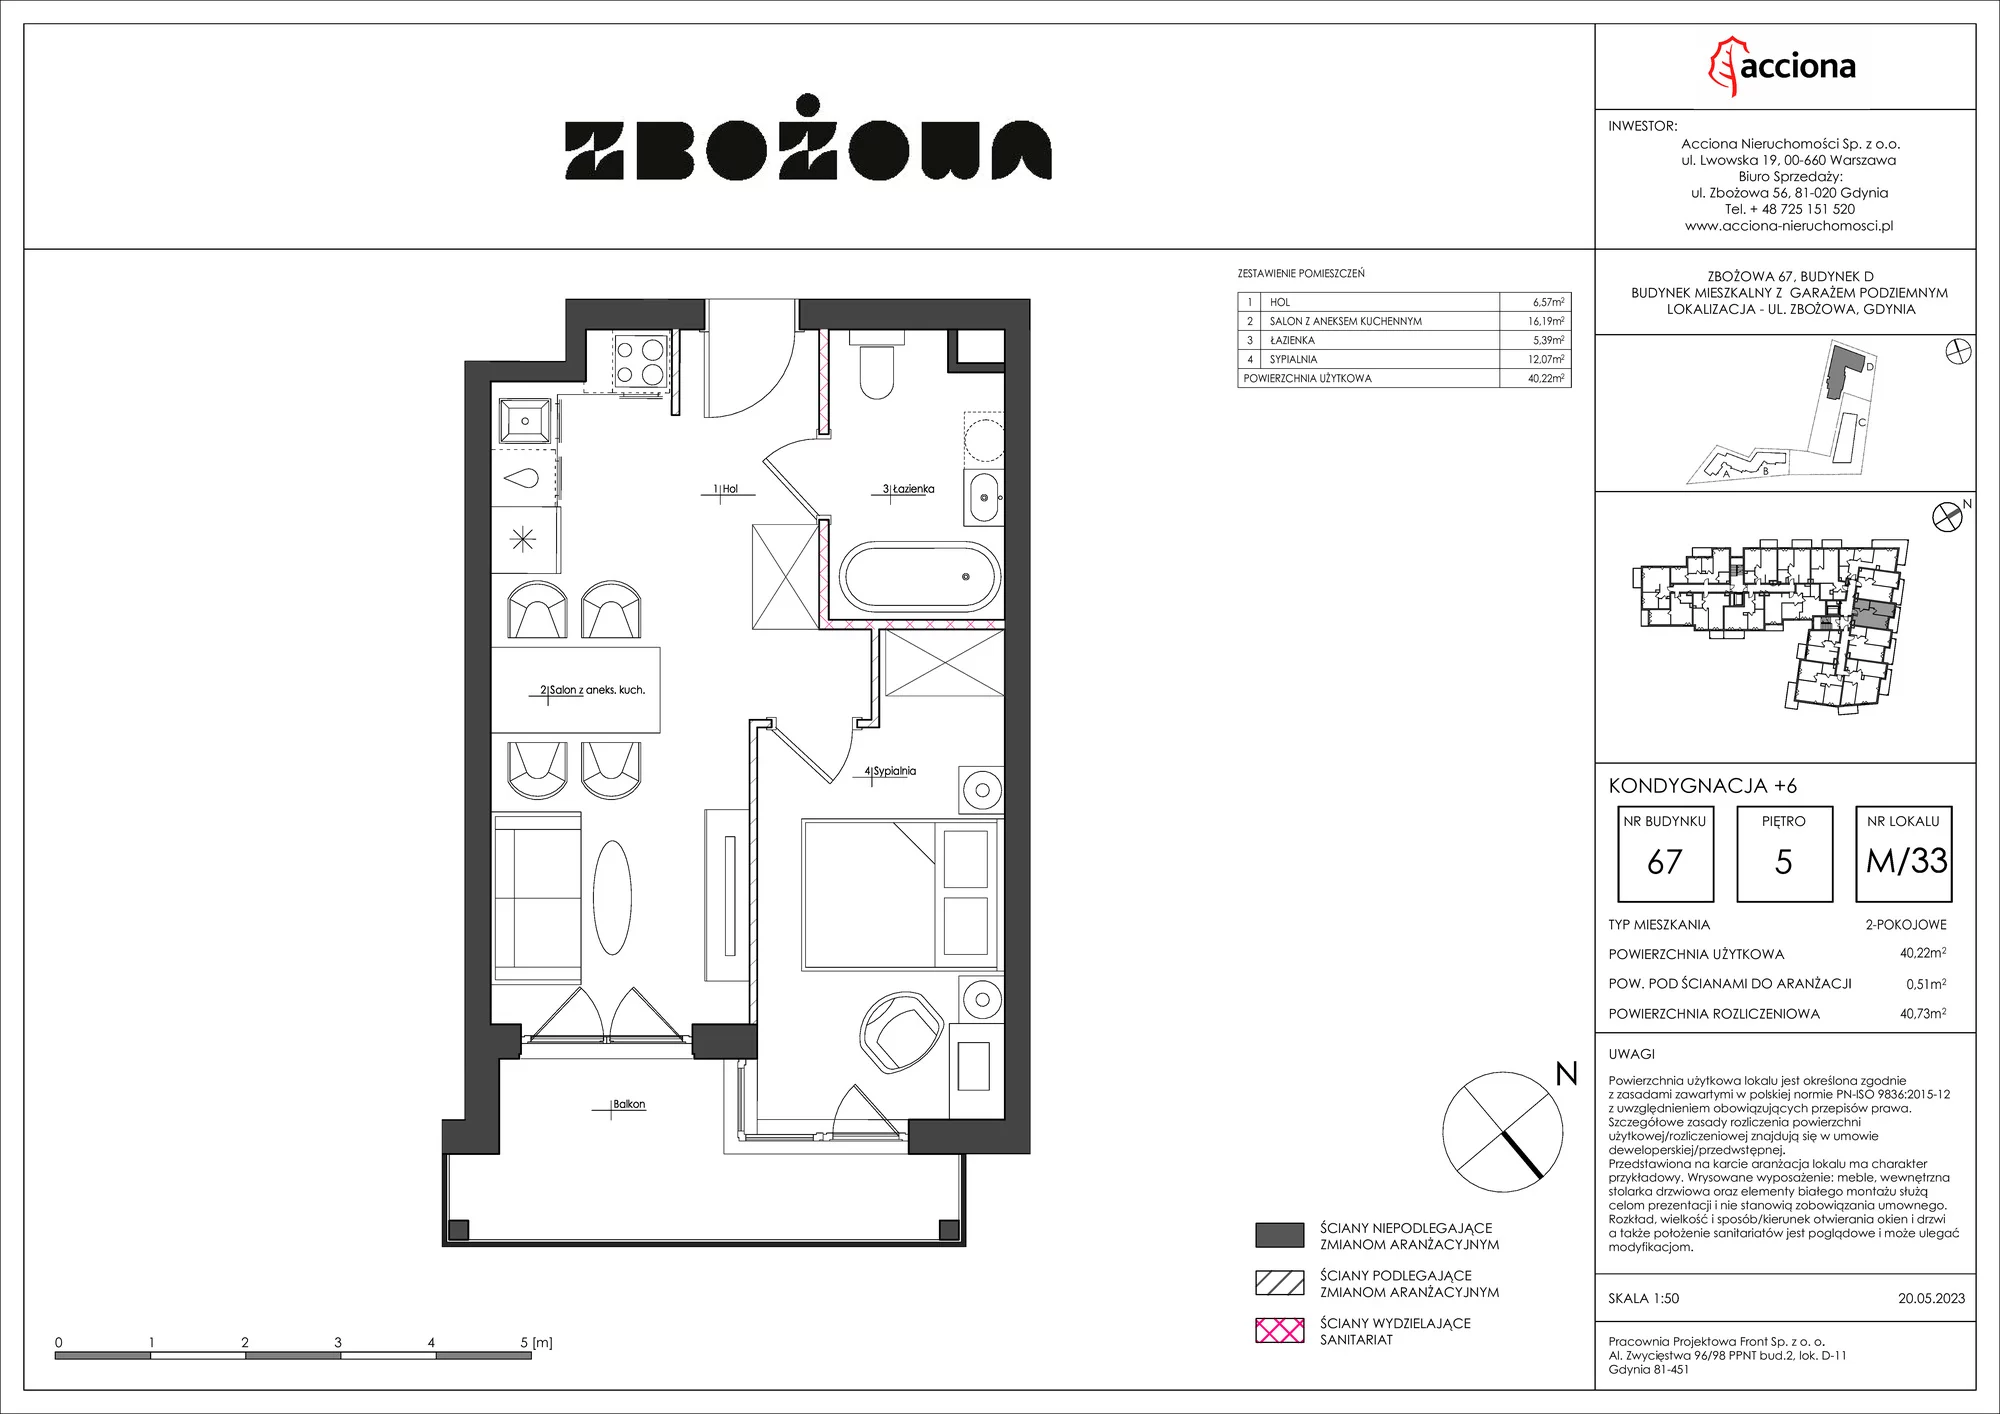 Mieszkanie 40,73 m², piętro 5, oferta nr 67.33, Zbożowa, Gdynia, Cisowa, ul. Zbożowa